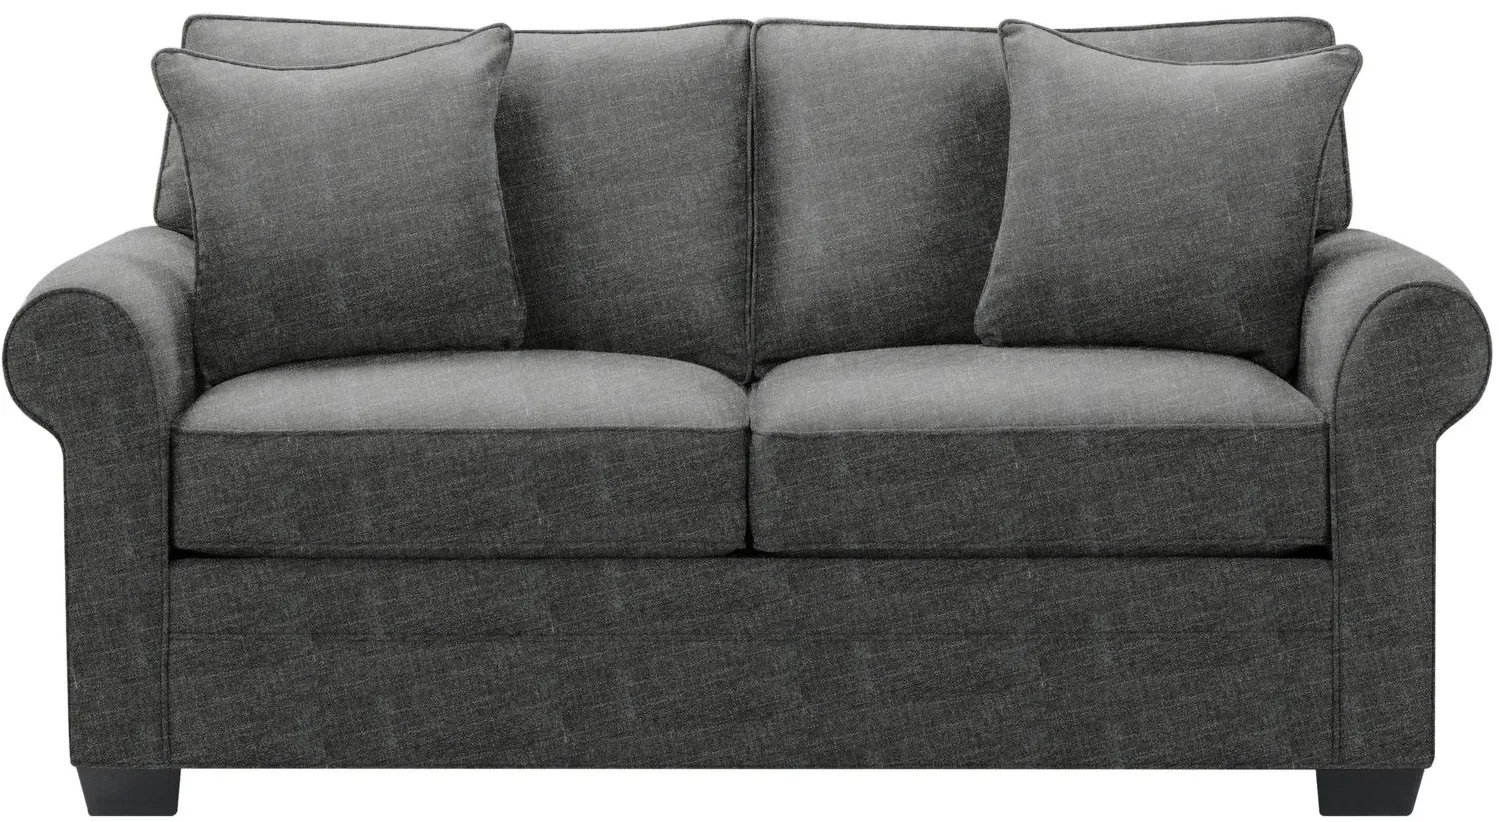 Glendora Full Sleeper Sofa in Elliot Graphite by H.M. Richards